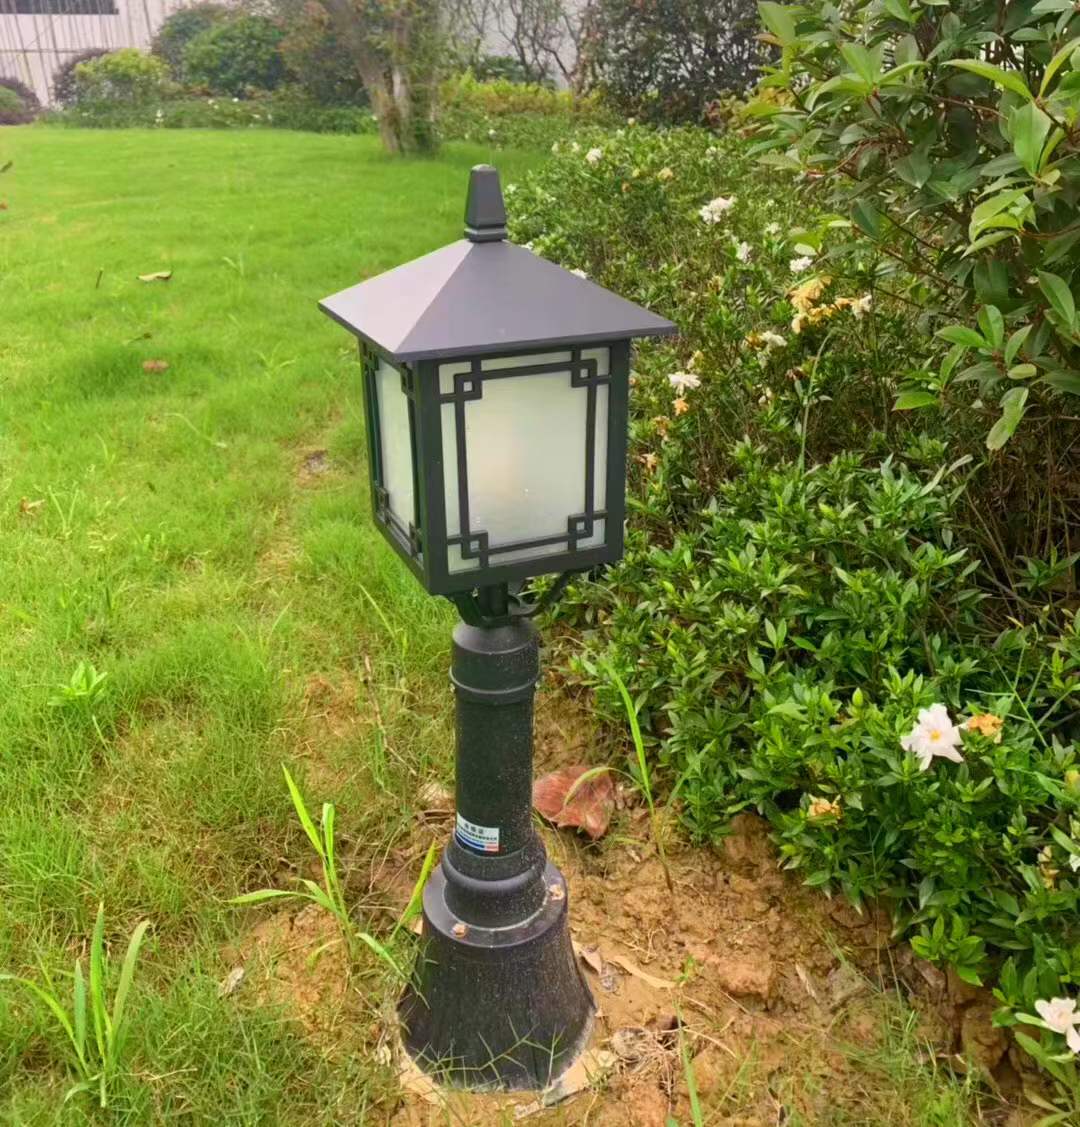 LED lawn lamp, park lawn landscape lamp